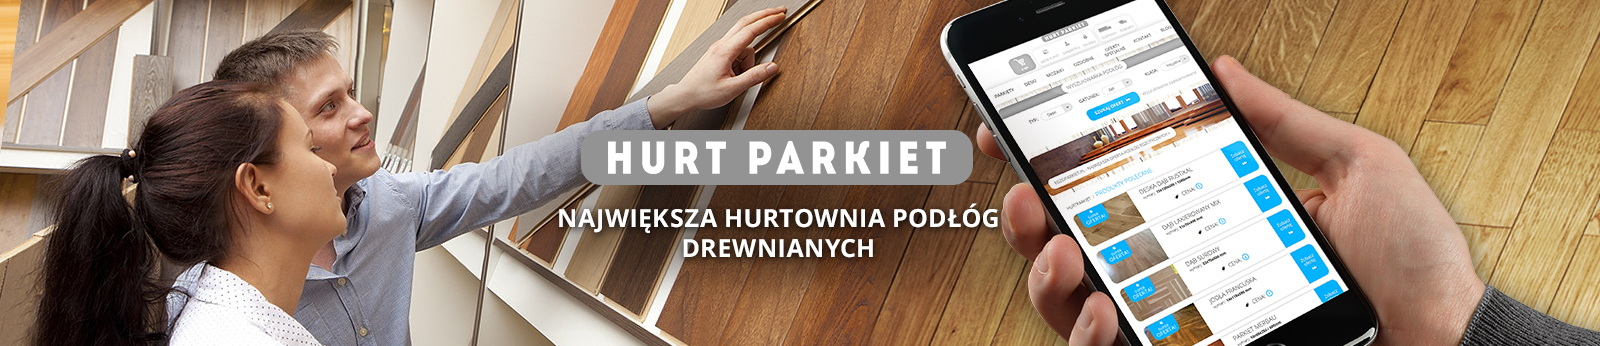 HURTPARKIET.pl - Największa Hurtowania Podłóg Drewnianych